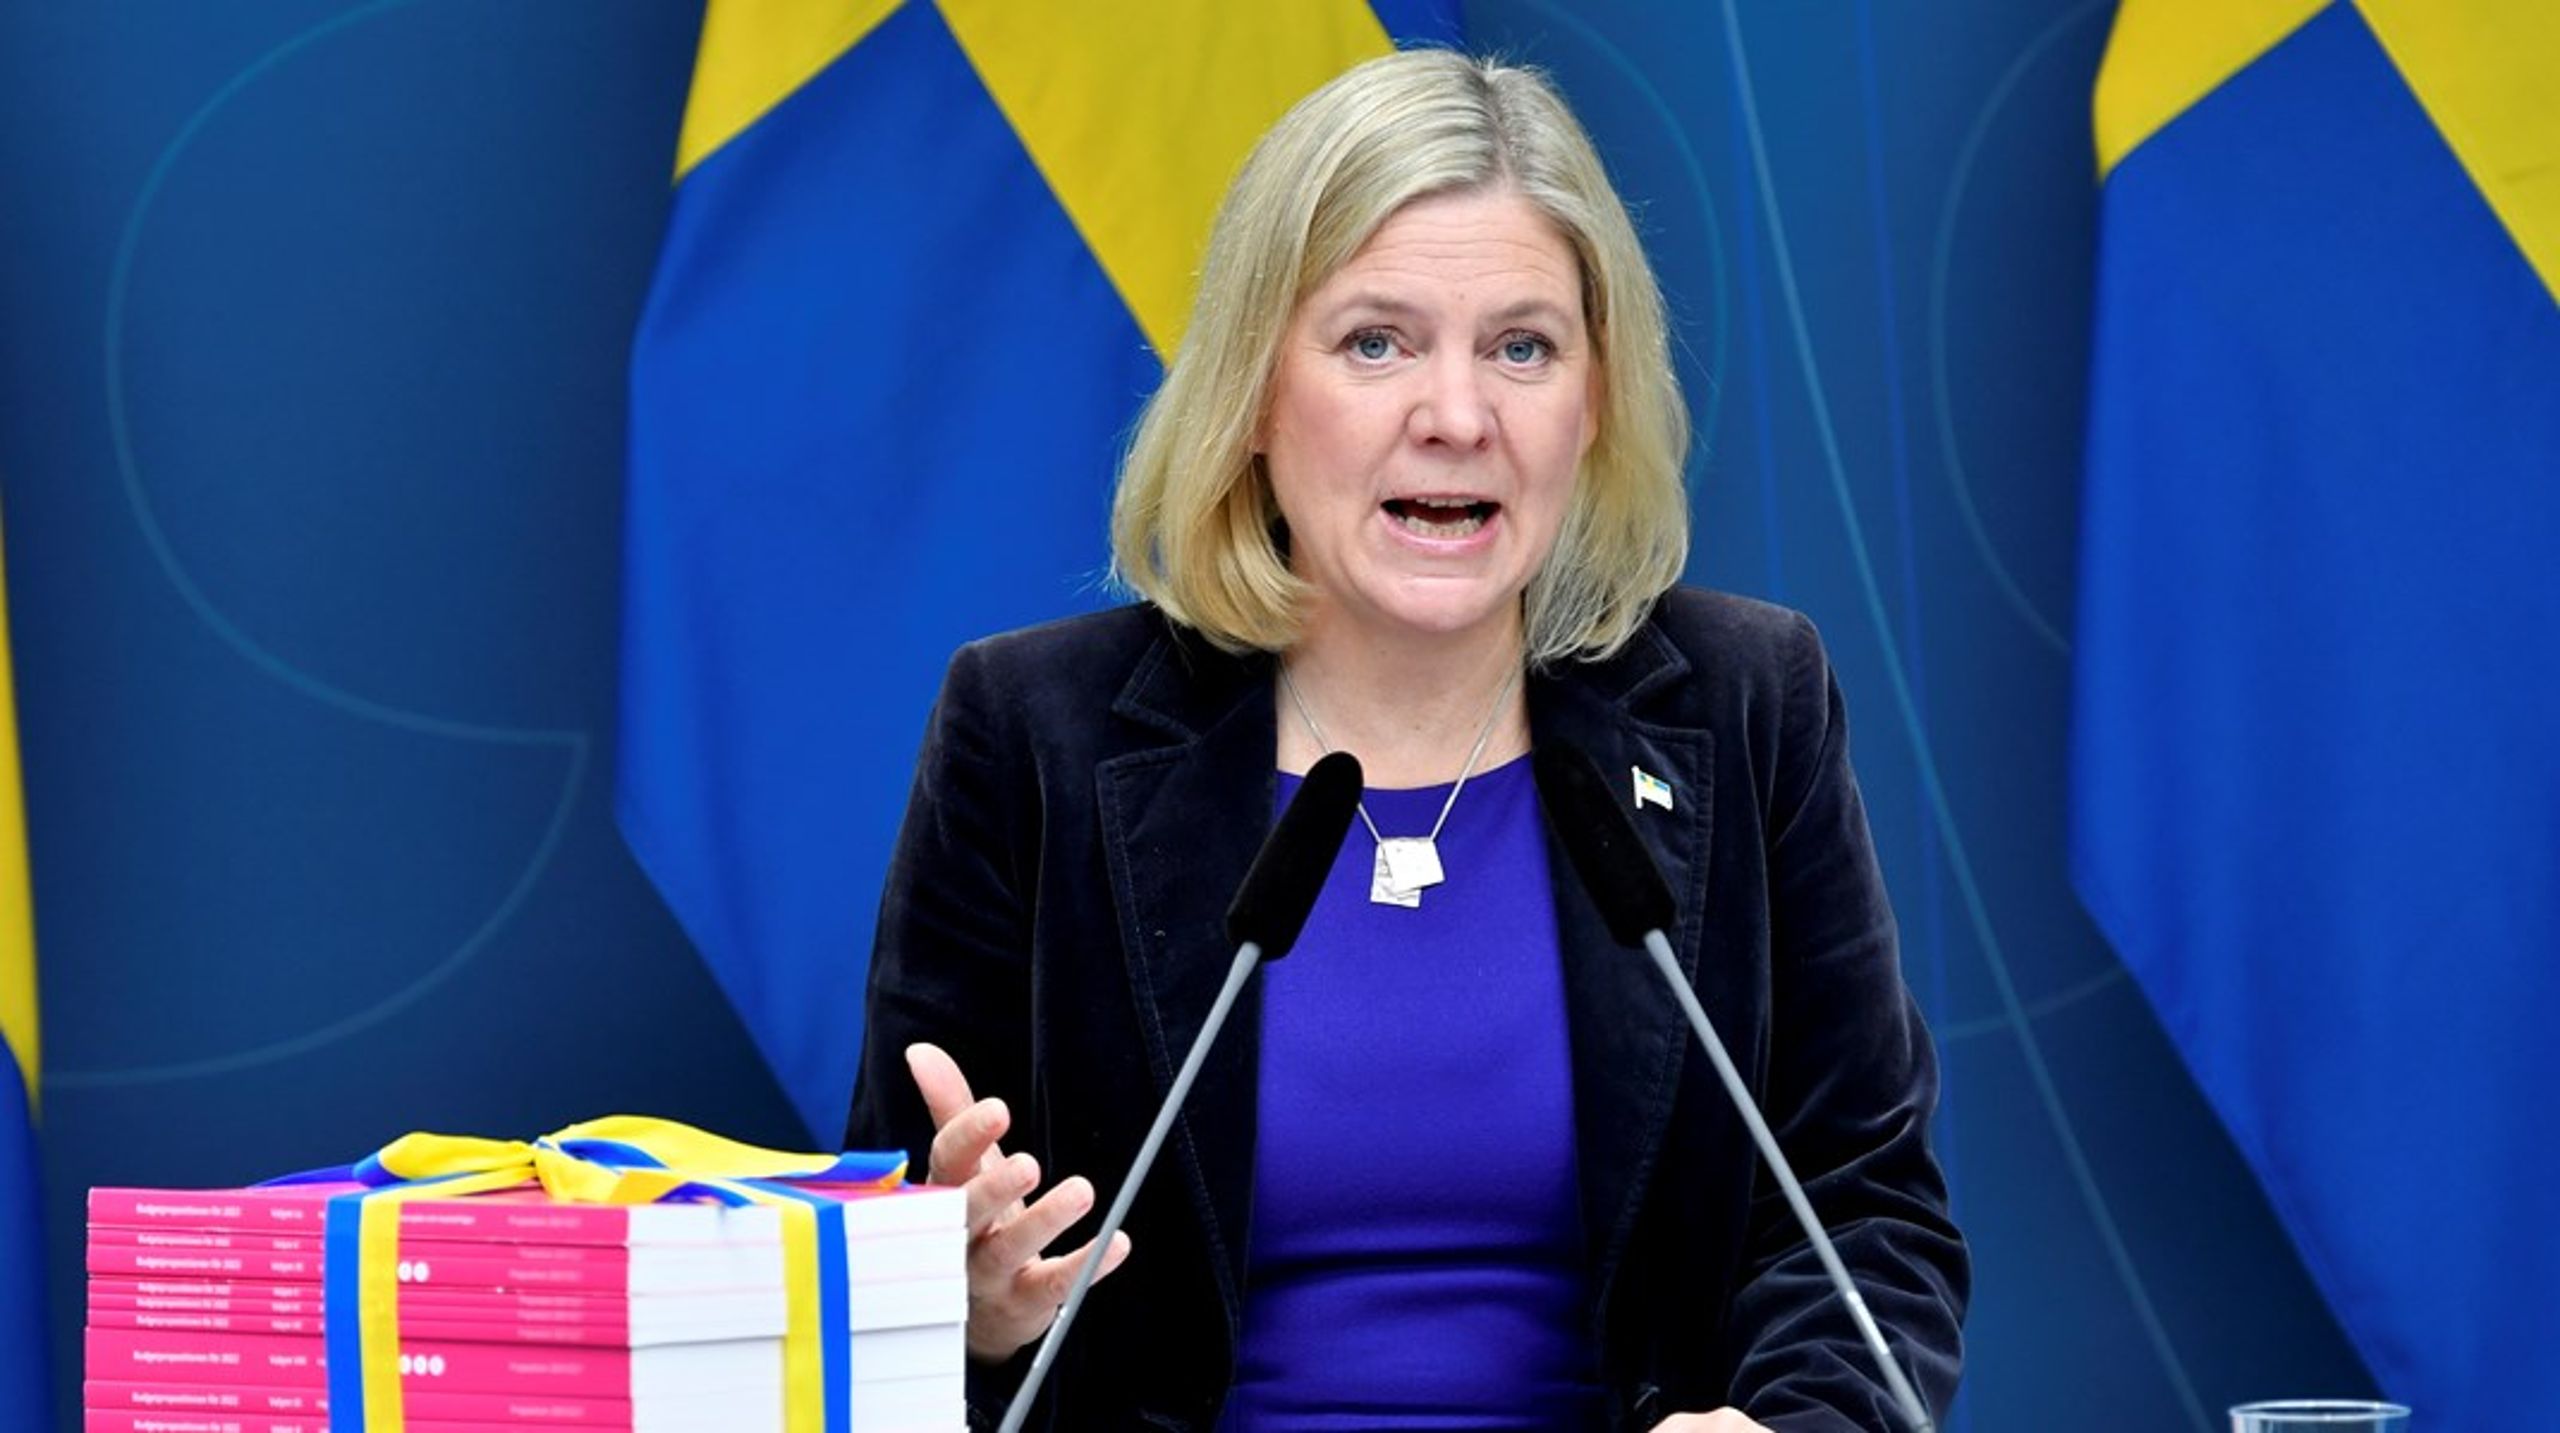 Finansminister Magdalena Andersson presenterade i dag en satsning med 5 miljarder till hälso- och sjukvården i regeringens budgetproposition 2022.